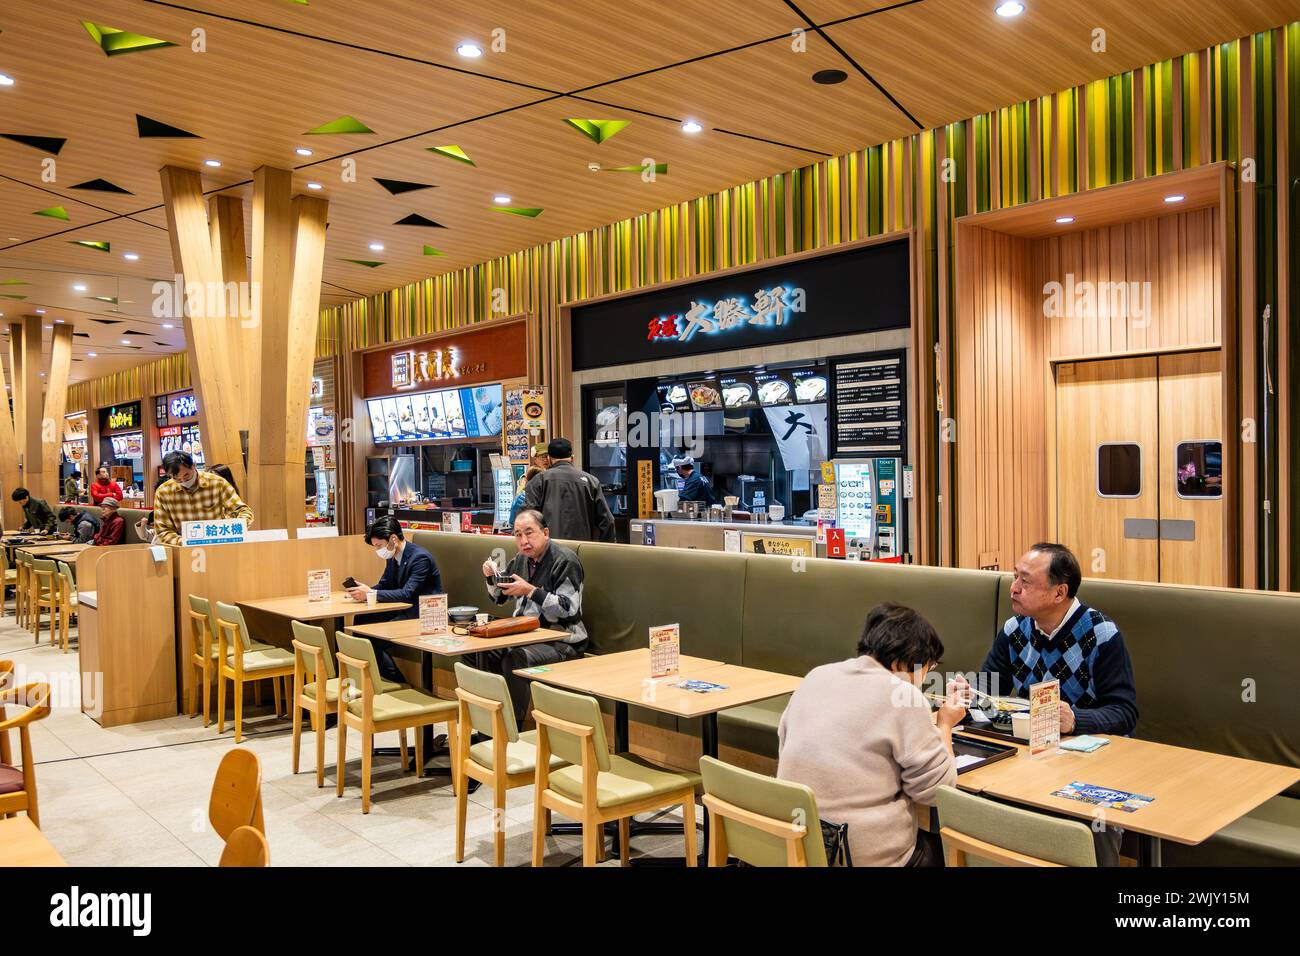 Kleine Restaurants in einem Food Court bieten eine Vielfalt an lokalen Speisen. Moriya, Japan. Stockfoto